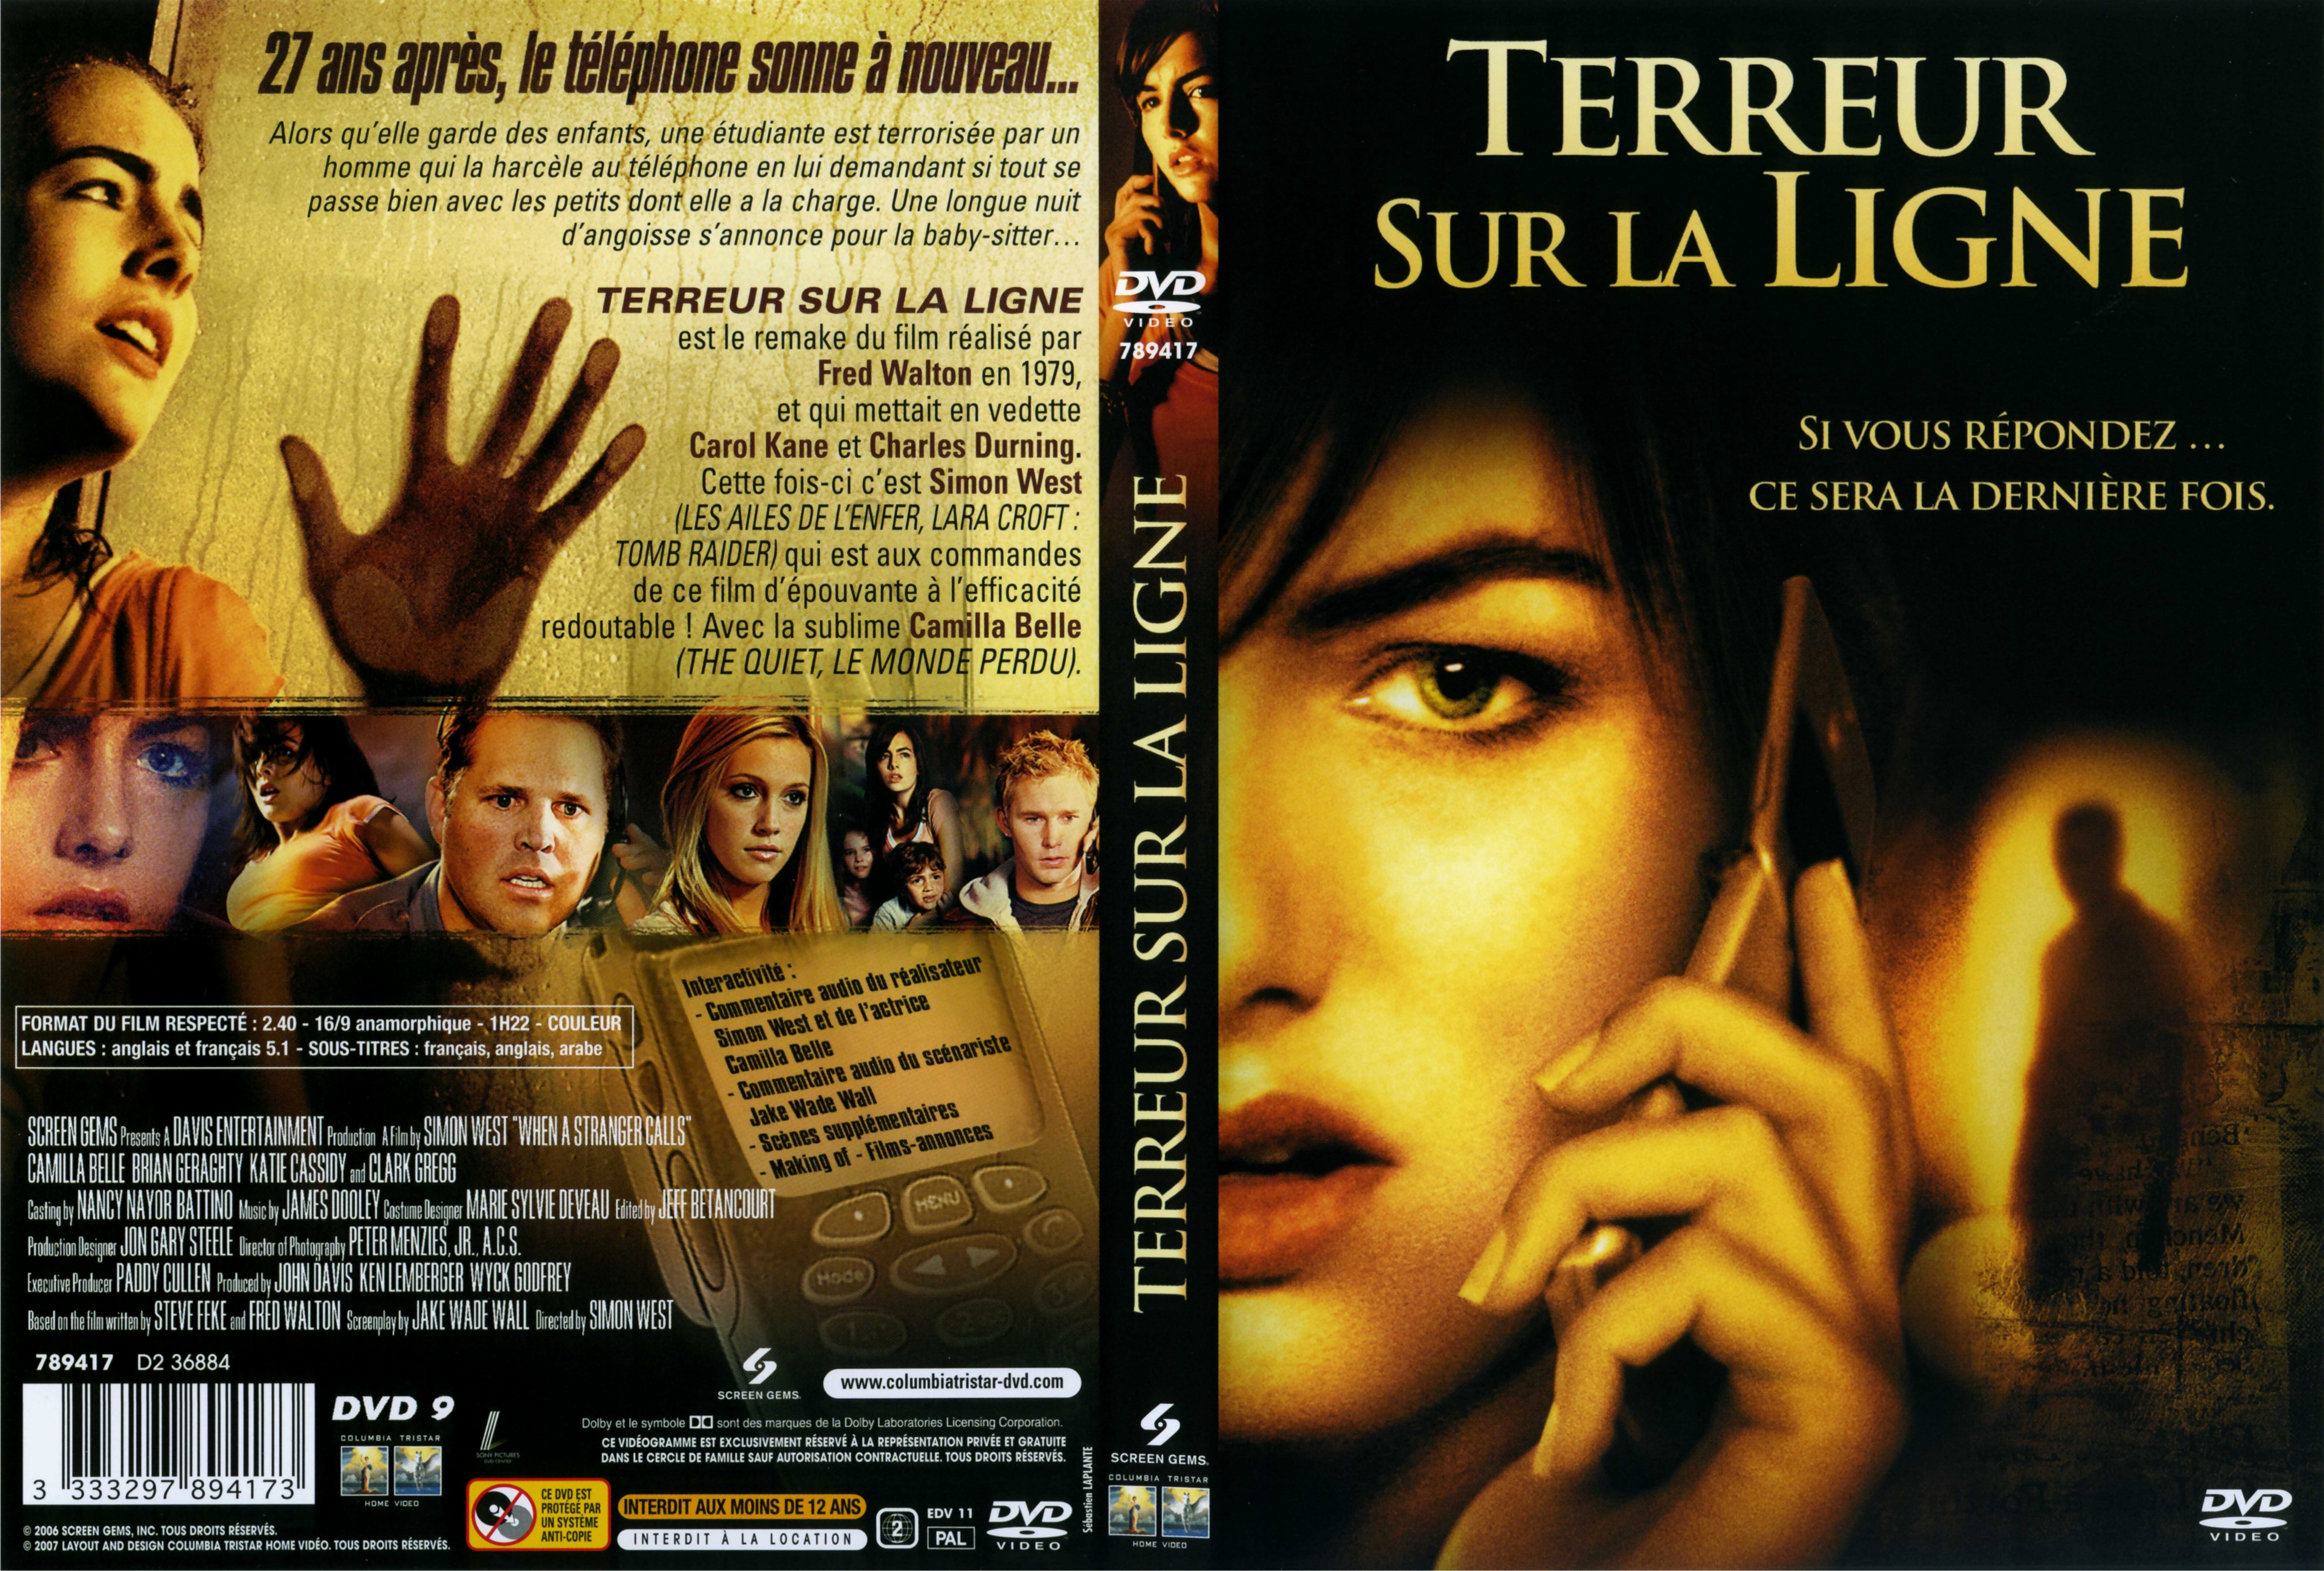 Jaquette DVD Terreur sur la ligne (2006) v2